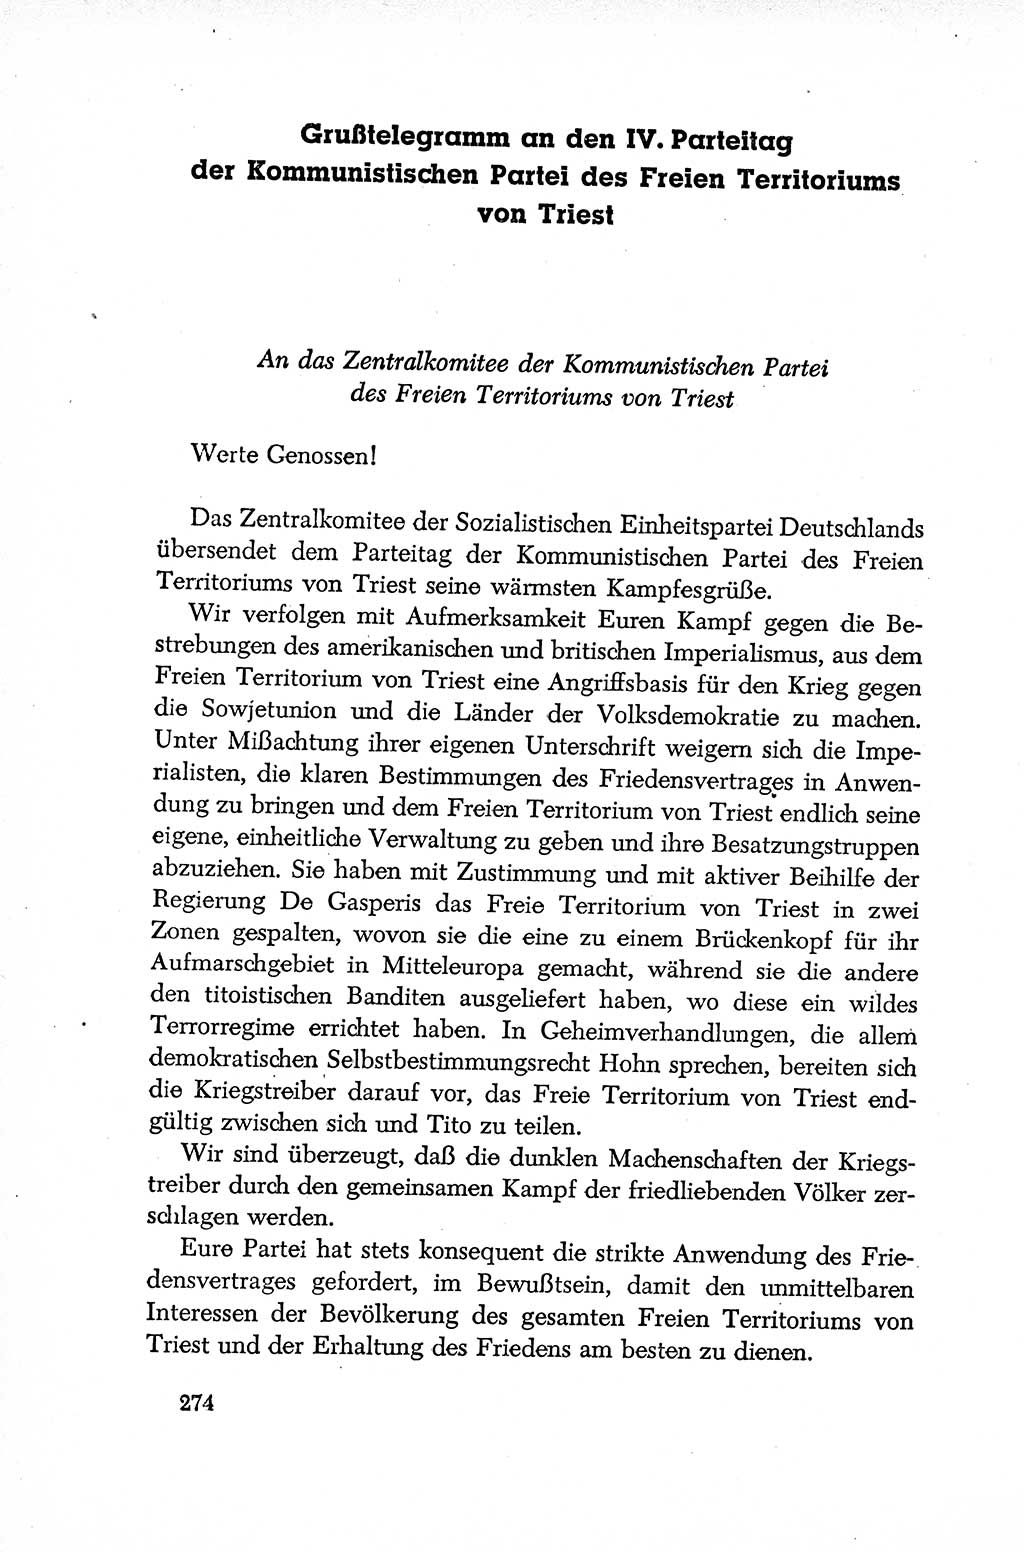 Dokumente der Sozialistischen Einheitspartei Deutschlands (SED) [Deutsche Demokratische Republik (DDR)] 1952-1953, Seite 274 (Dok. SED DDR 1952-1953, S. 274)